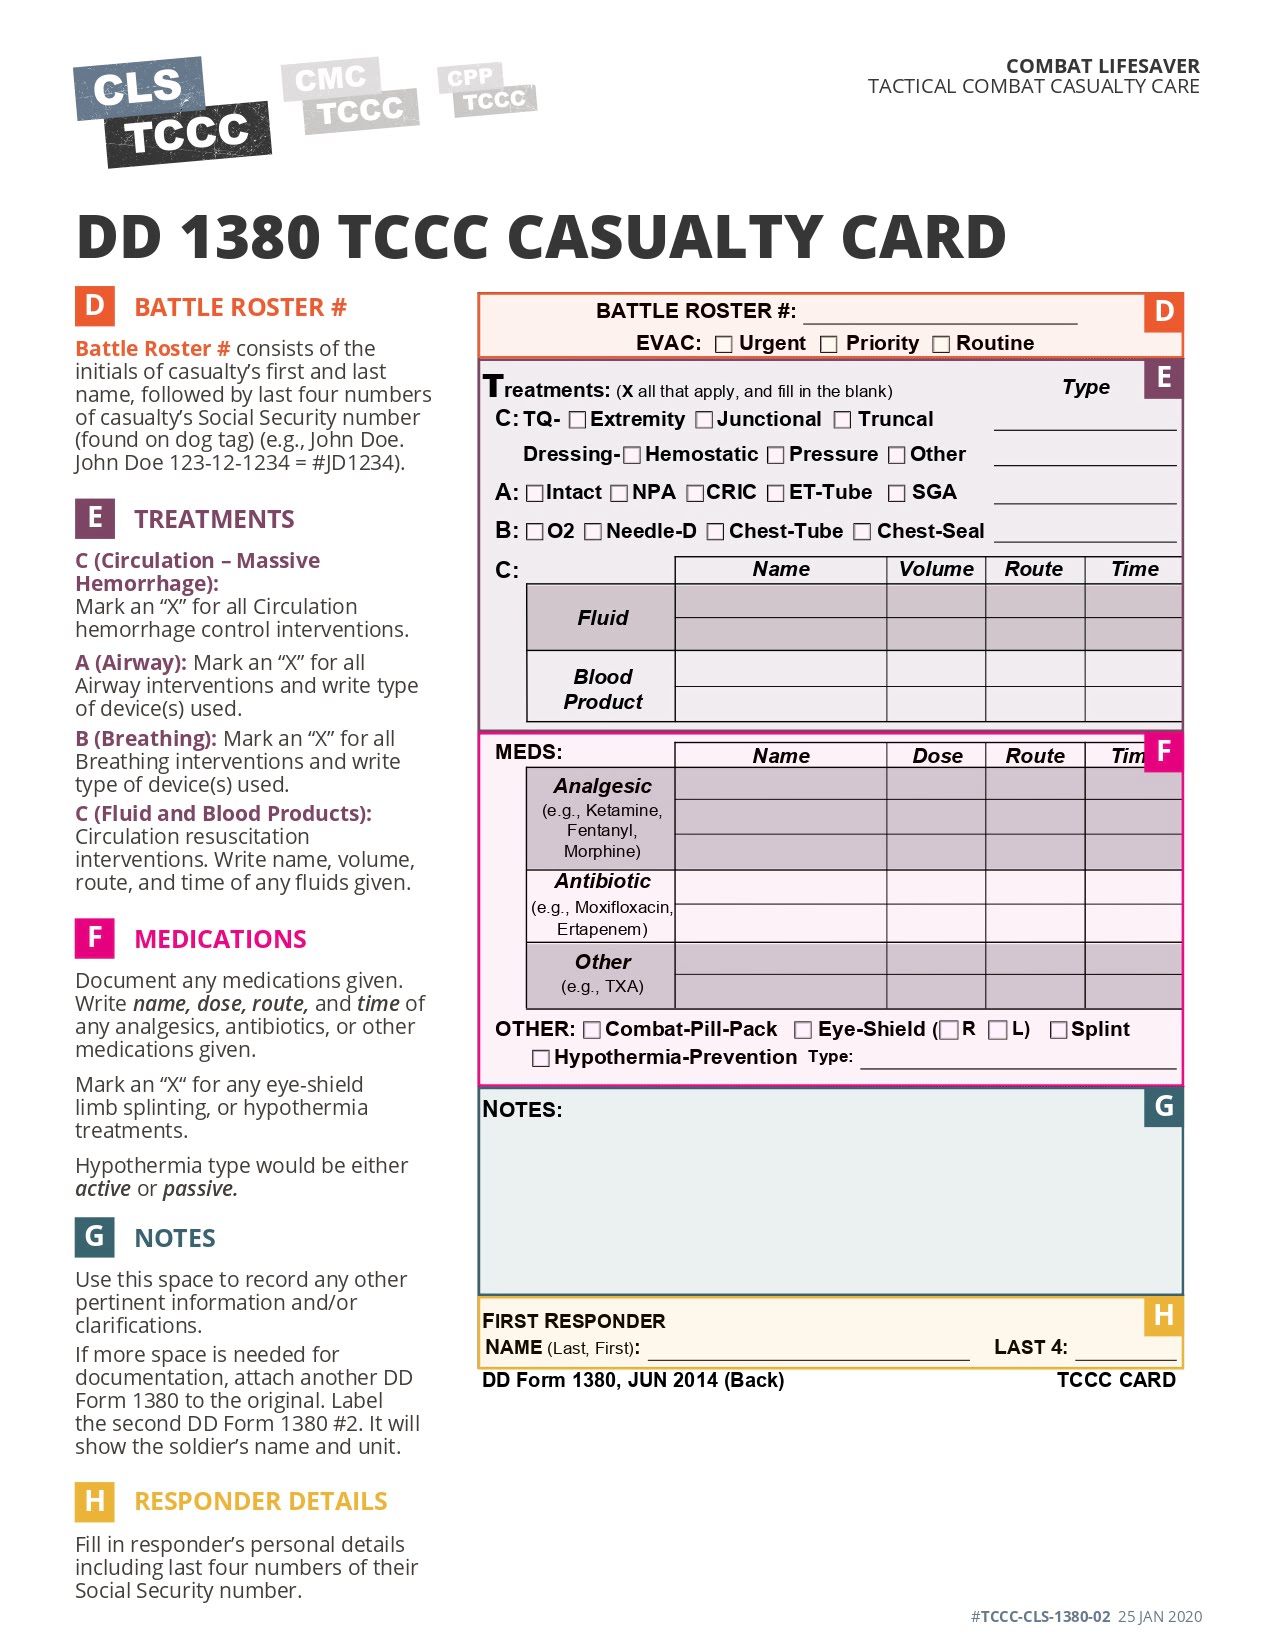 DD Form 1380 TCCC Card, page 2